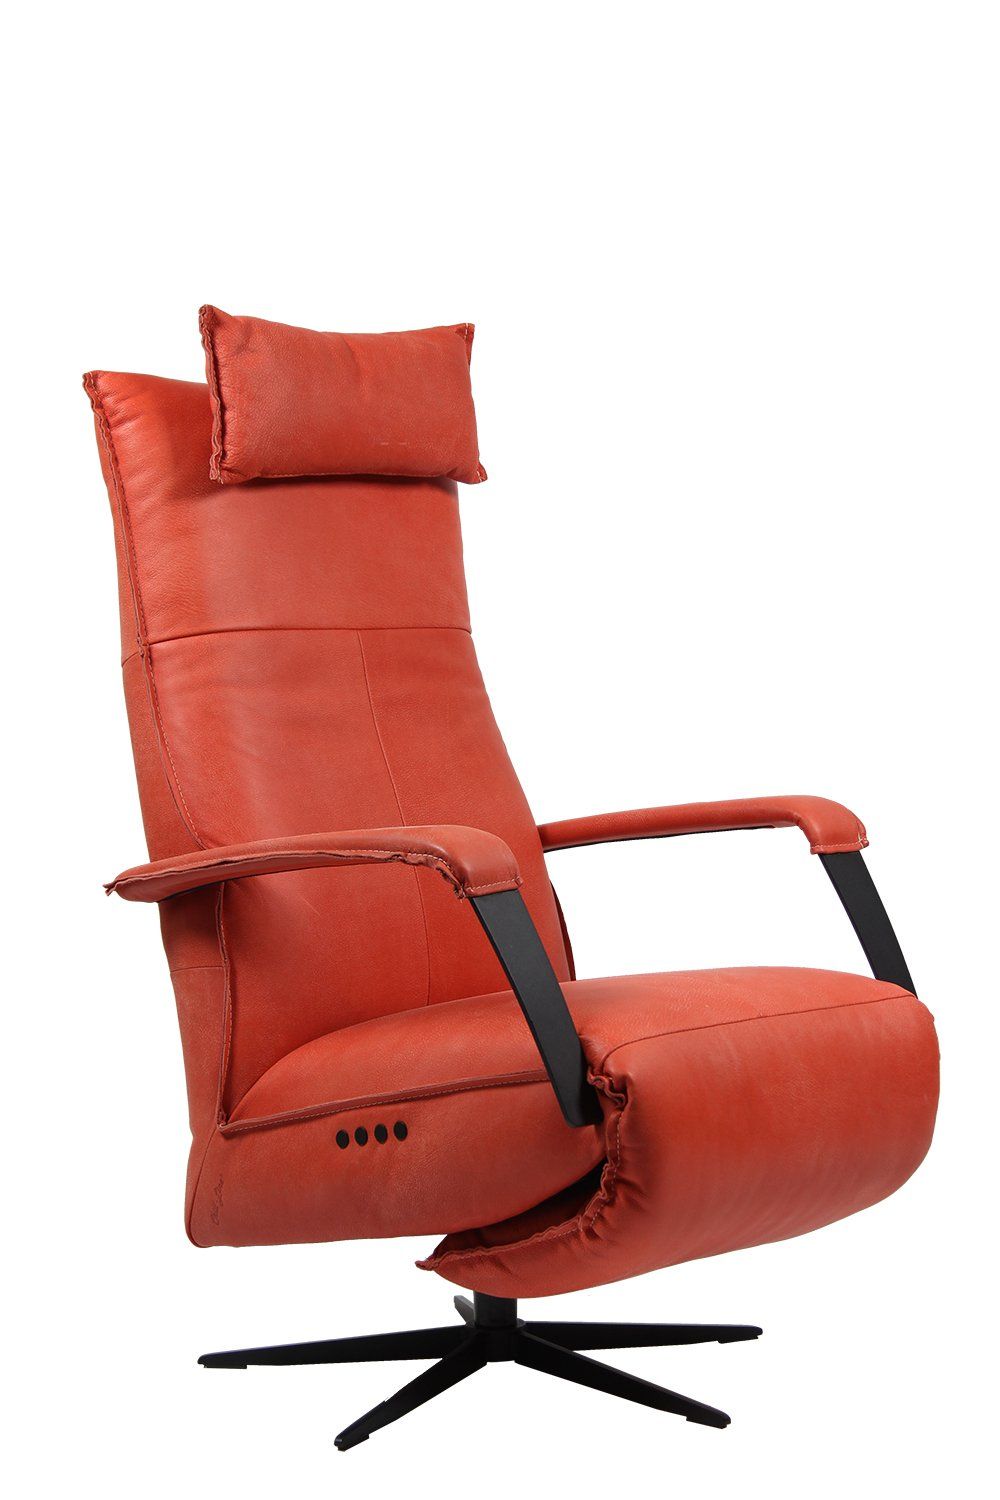 Luxe relaxfauteuil Deliza van Chill-line word voorzien van een duomotor, en accu. Met zijn zwarte tiptoetsen en een zwart laadpunt. Kunt u deze stoel geheel automatisch in te stellen op uw wensen. Bedient zowel de leuning als het voetenplateau met de tiptoetsen in de zitting van uw Relaxfauteuil.